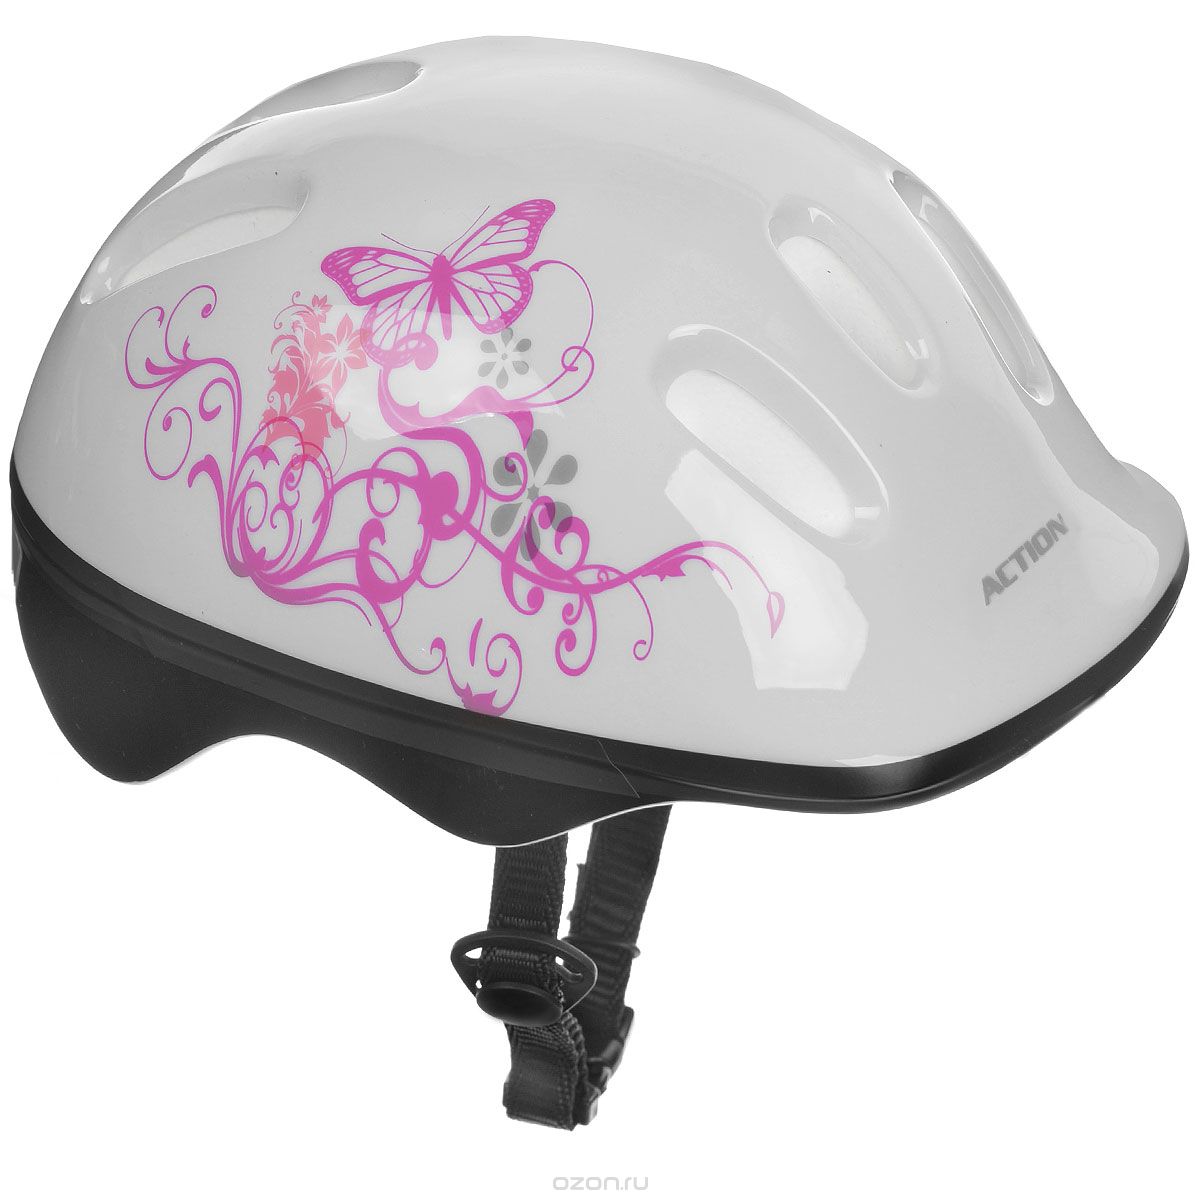 Шлем защитный “Action”, цвет: белый, розовый. Размер XS /48-51/. PWH-10